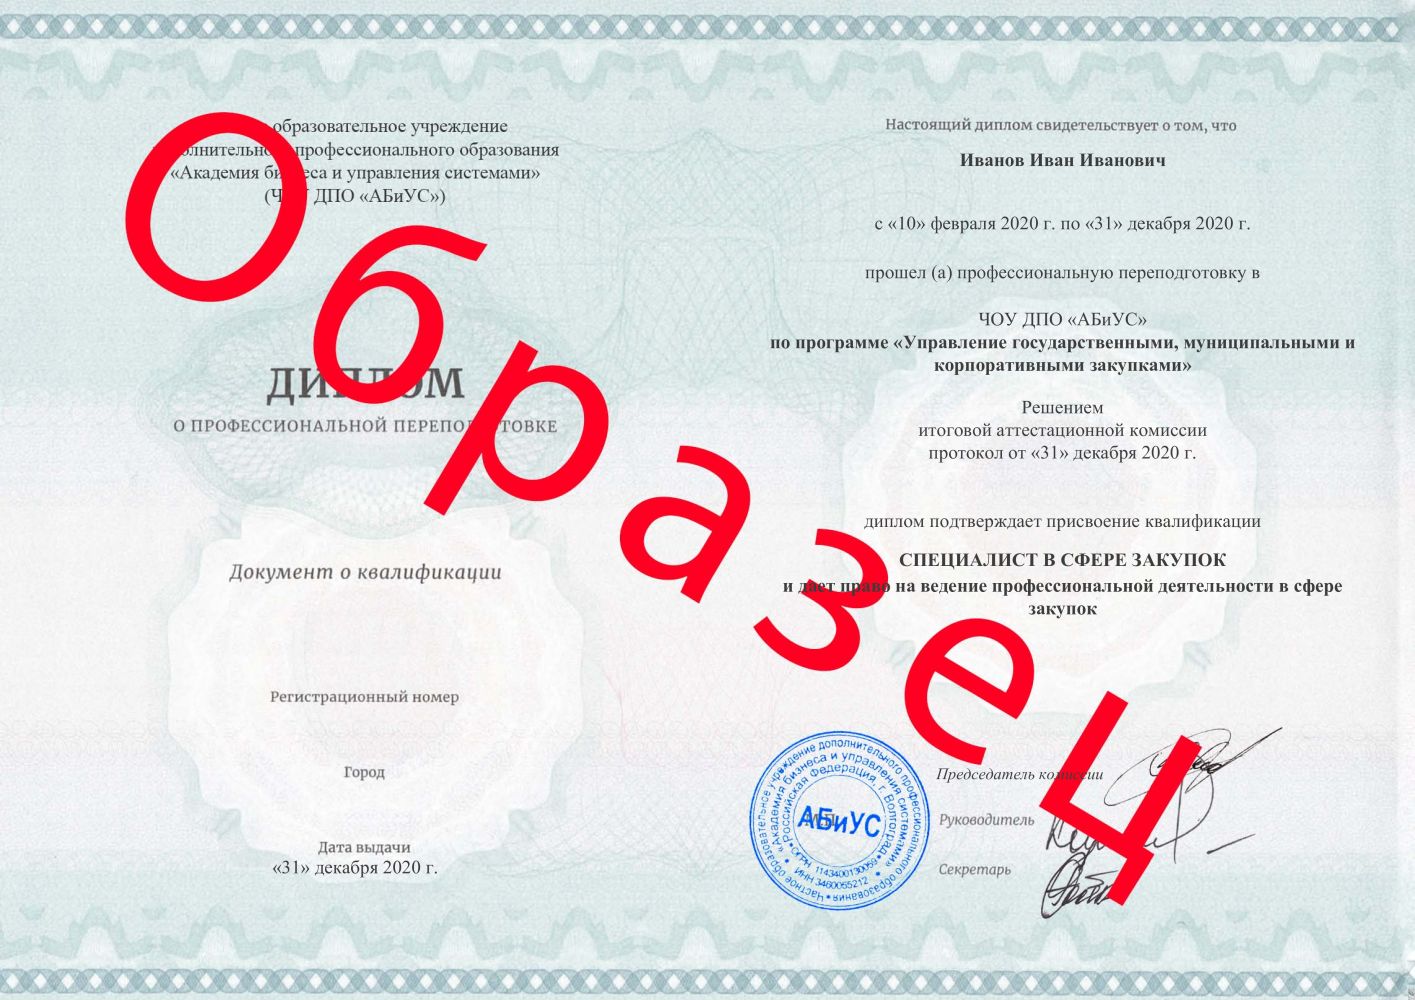 Диплом Управление государственными, муниципальными и корпоративными закупками 510 часов 18375 руб.